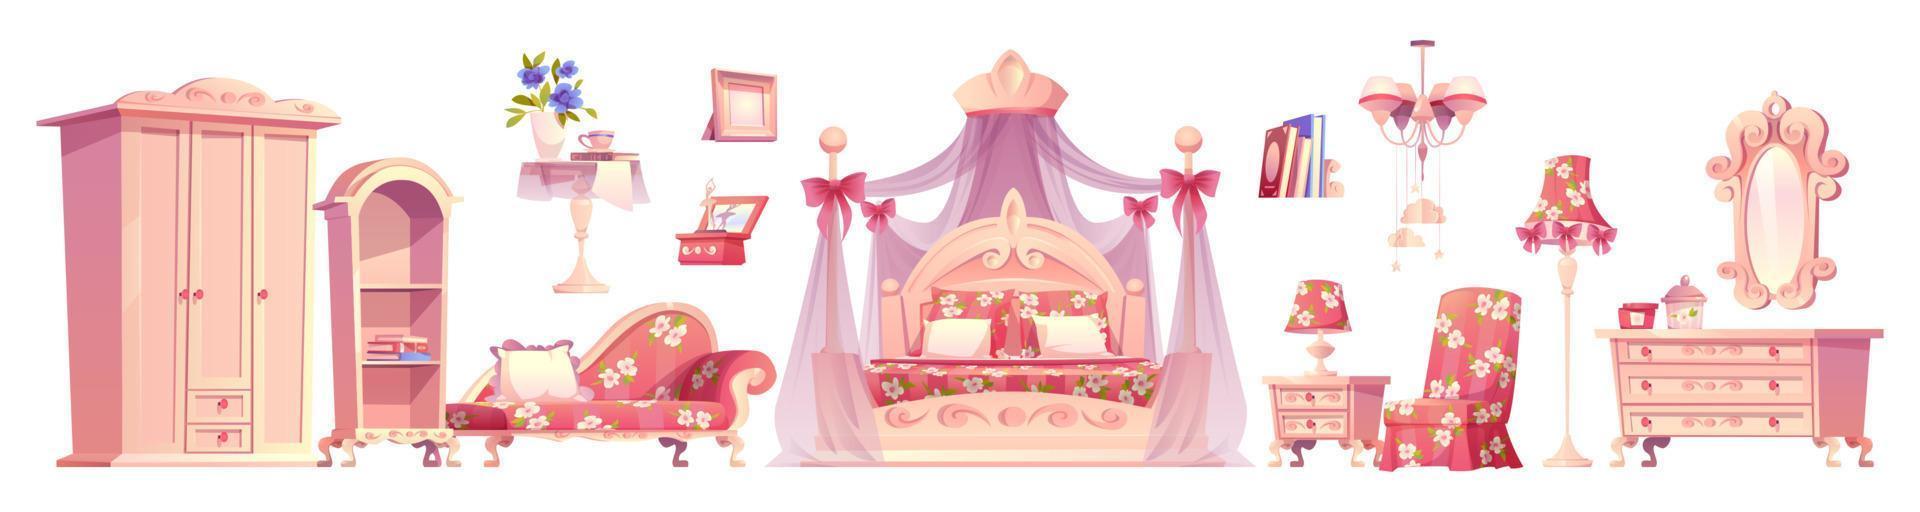 quarto rosa, conjunto de vetores de móveis de quarto de princesa